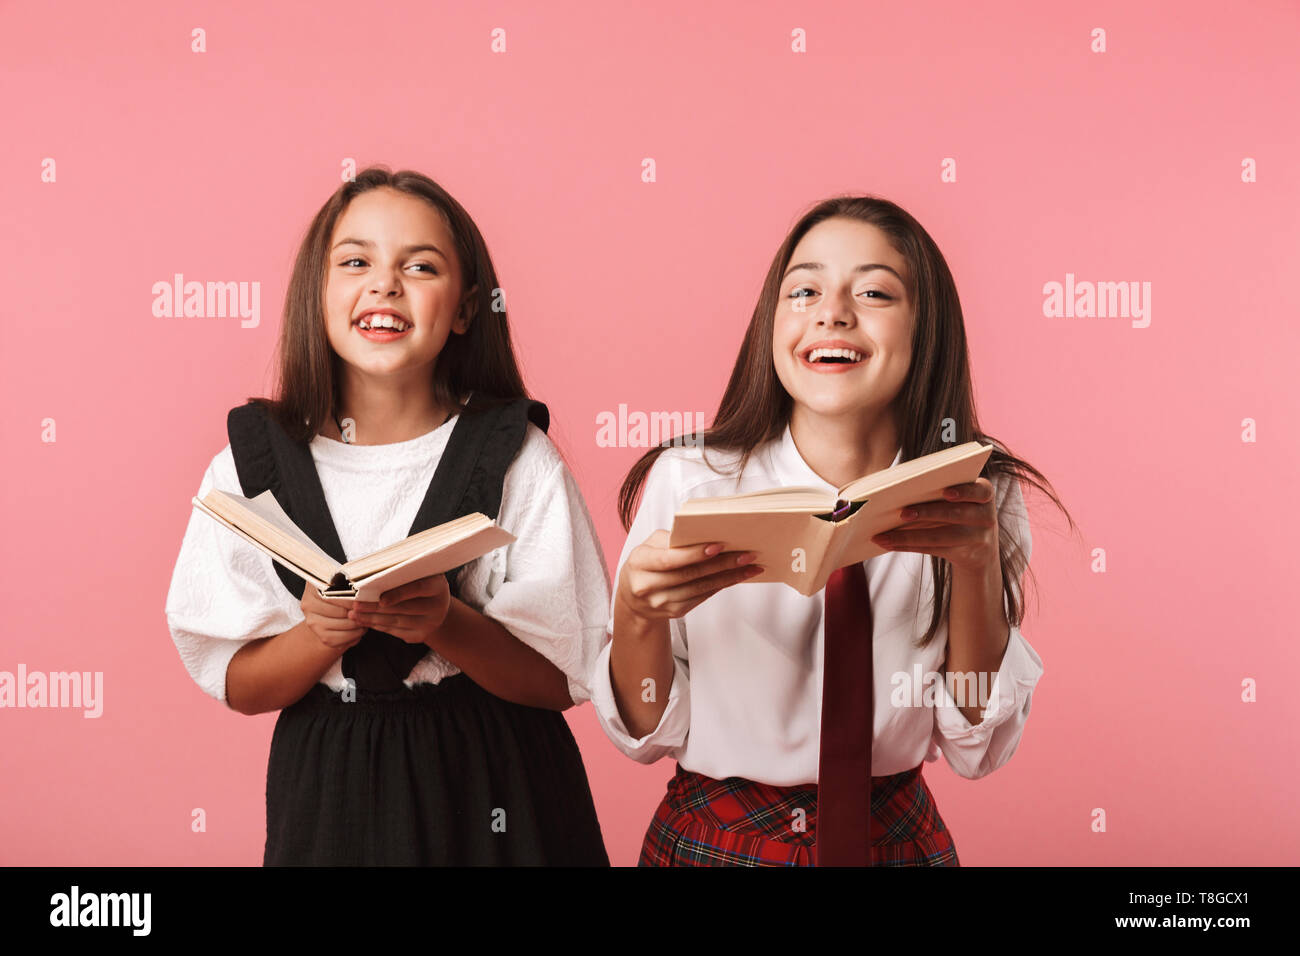 Ritratto di adorabili ragazze in uniforme scolastica libri di lettura permanente, mentre isolate su sfondo rosso Foto Stock